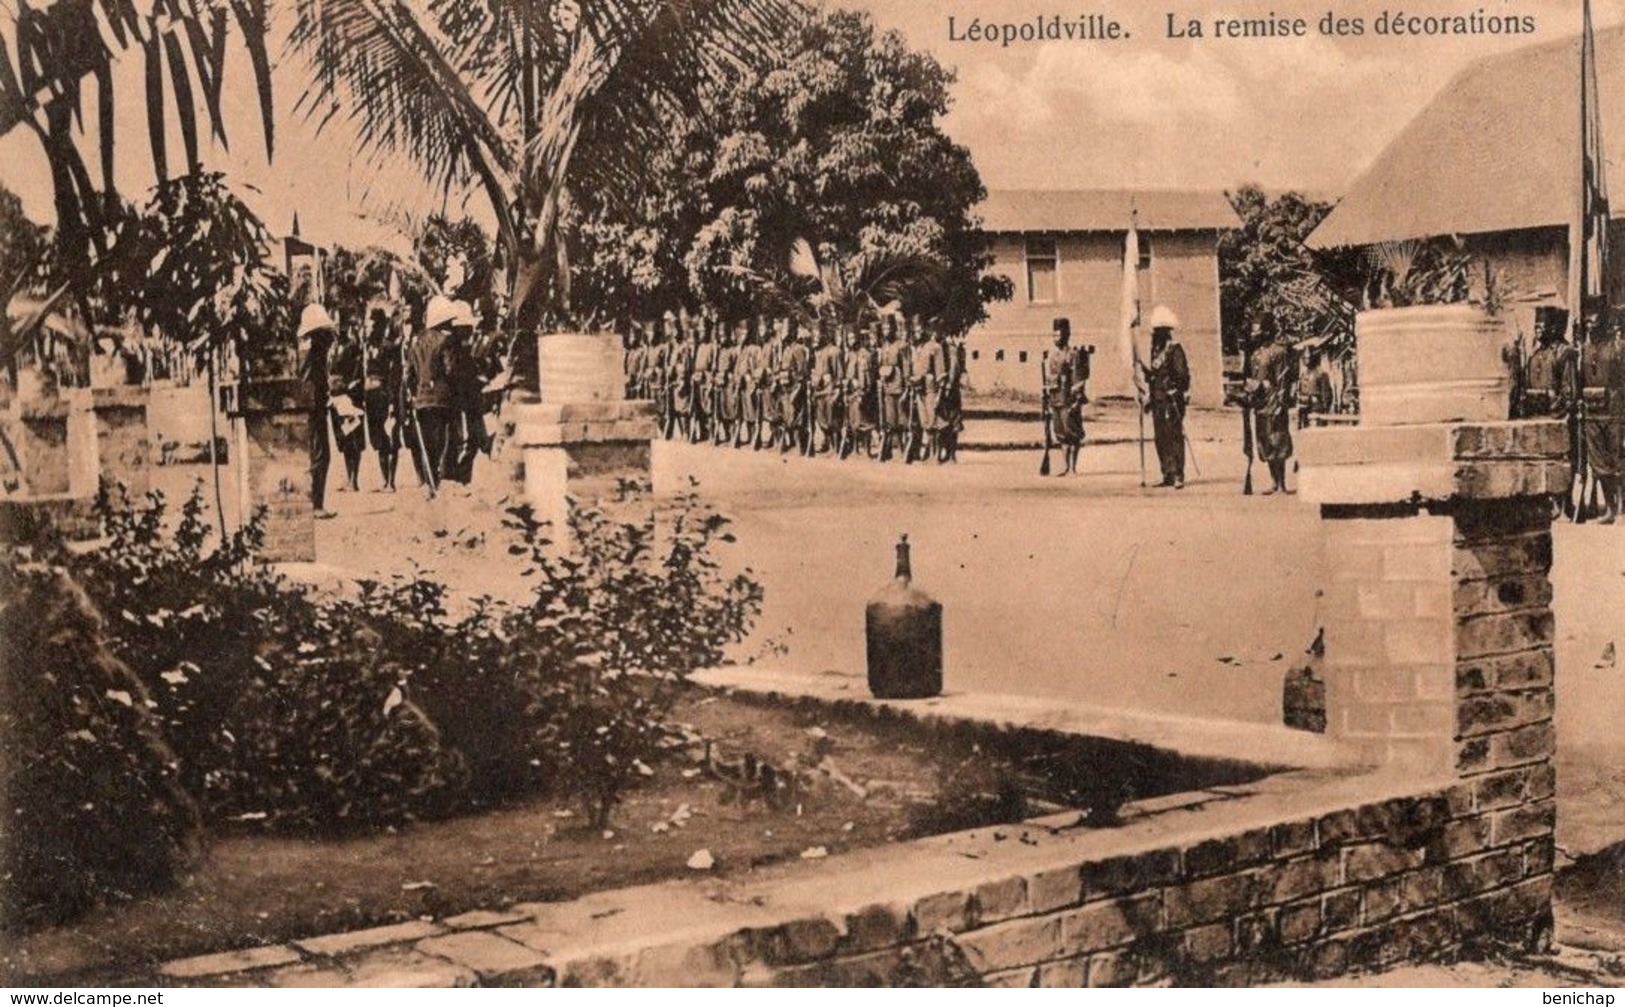 CPA CONGO BELGE - LEOPOLDVILLE - REMISE DES DECORATIONS - SOLDATS CONGOLAIS - NEUVE - NON CIRCULEE. - Kinshasa - Leopoldville